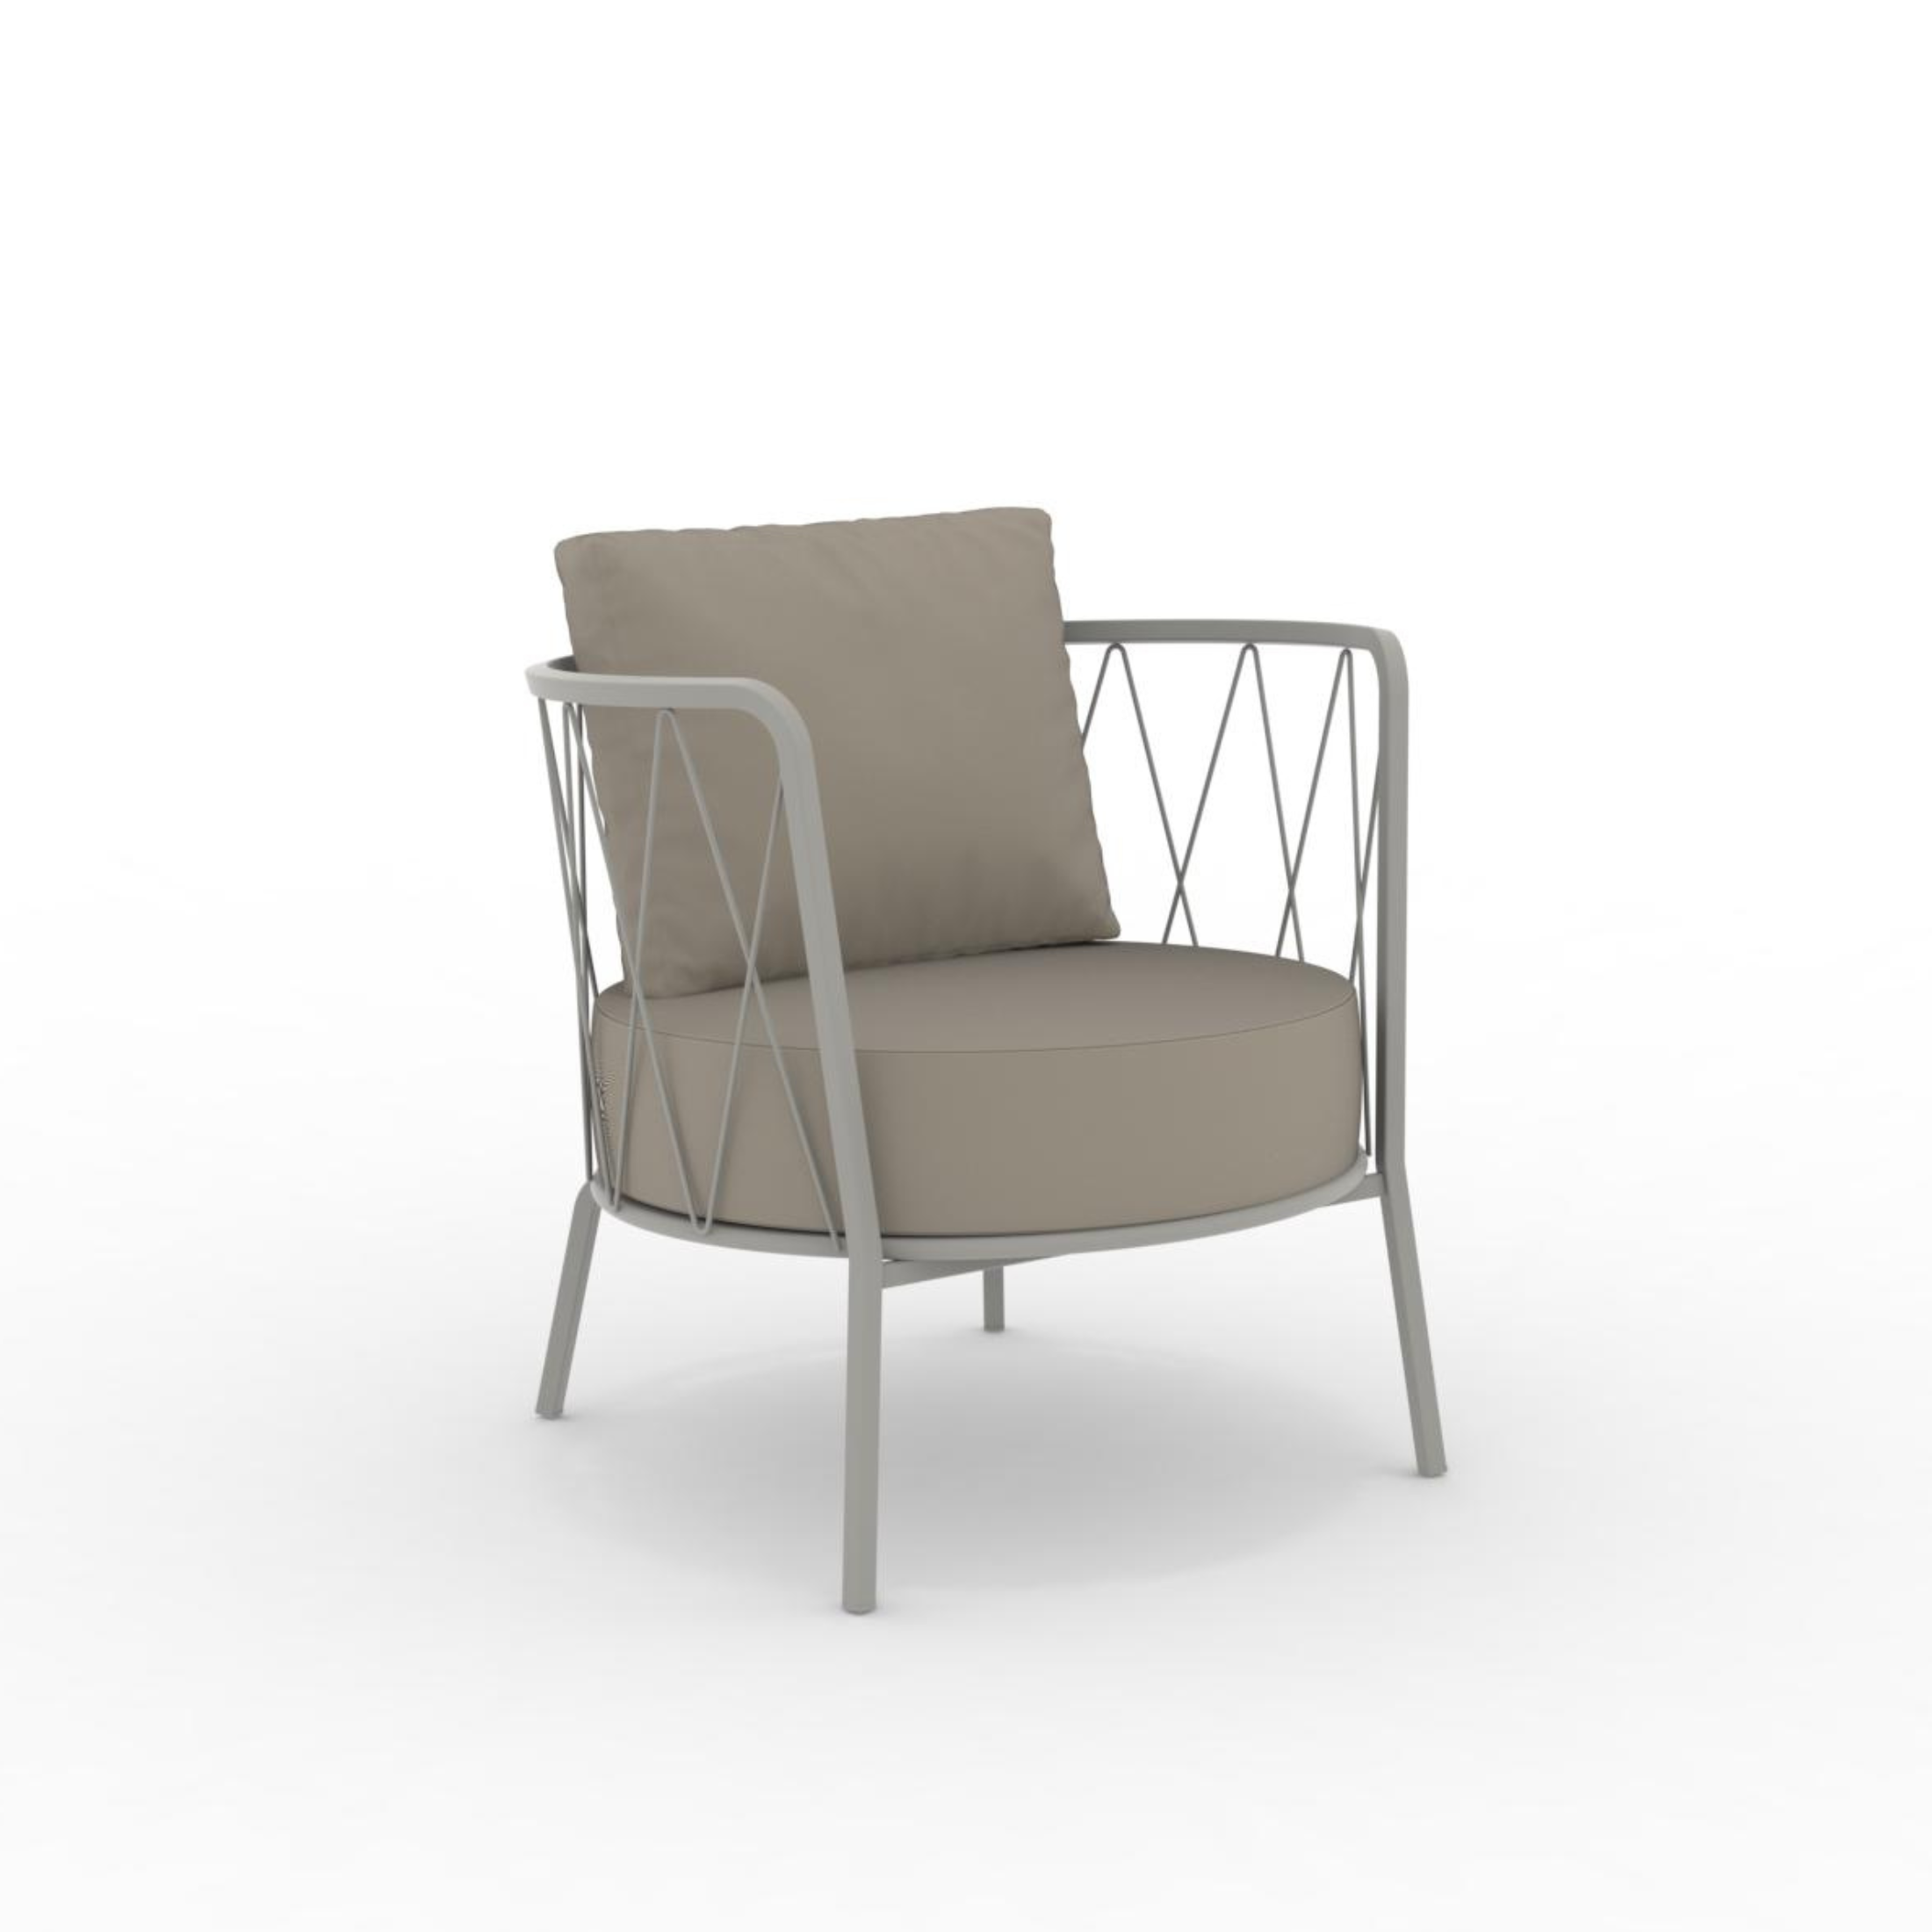 Poltrona bassa in metallo zincato "Daisy12" sedia lounge da giardino cm 73x73 71h